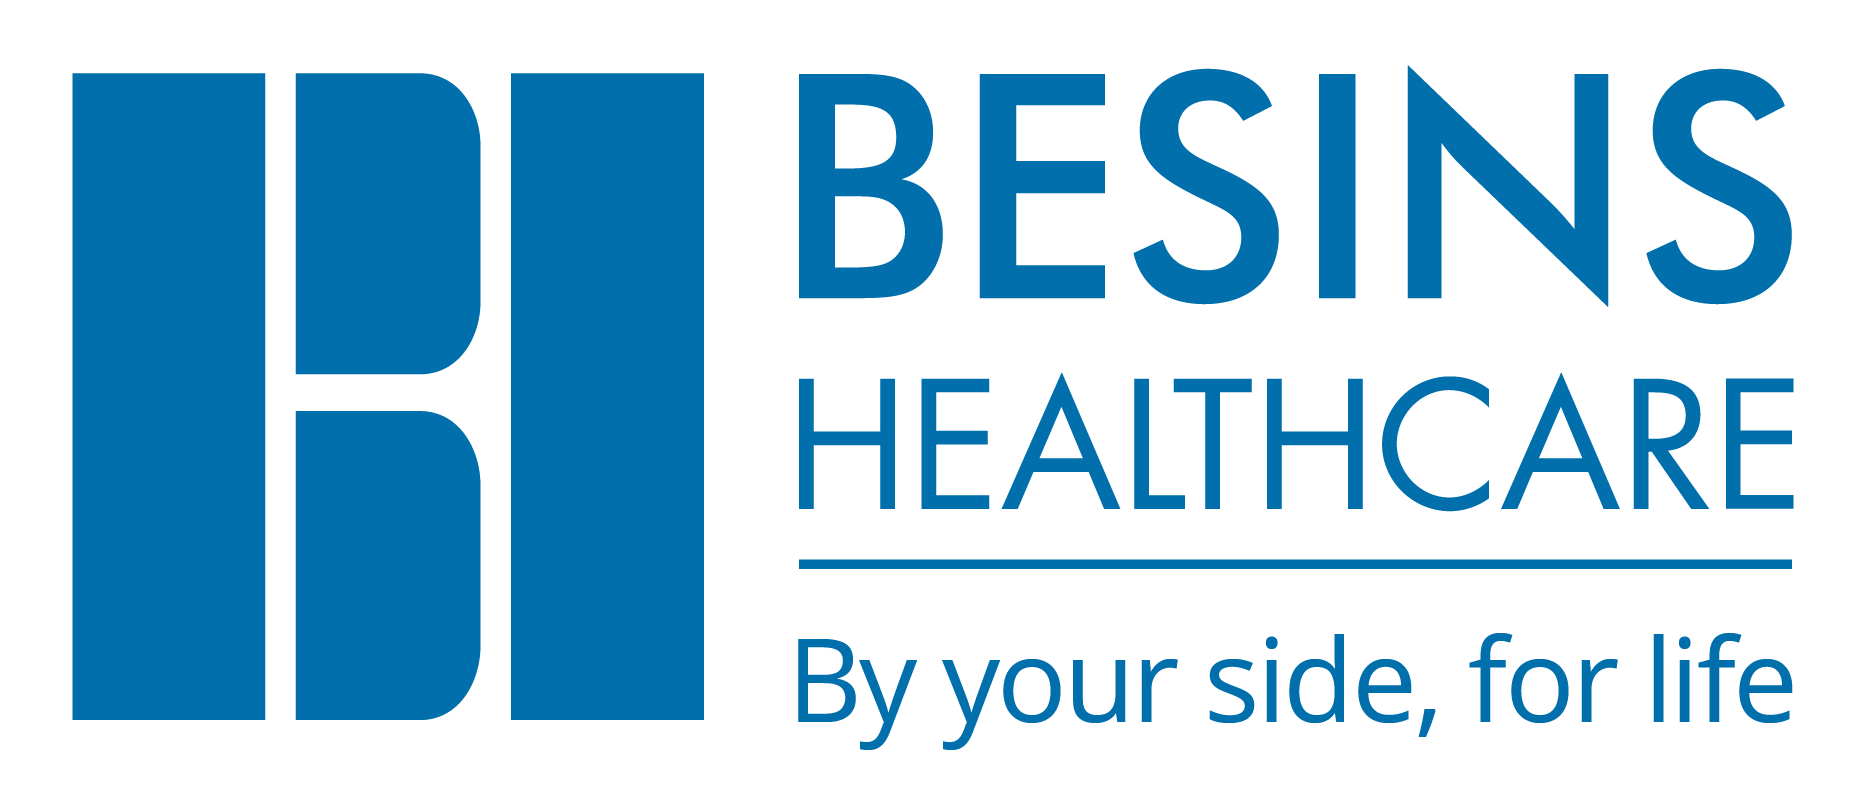 Besins Healthcare : améliorer la planification, la communication et les coûts des projets grâce à un outil de gestion de projet (PPM)